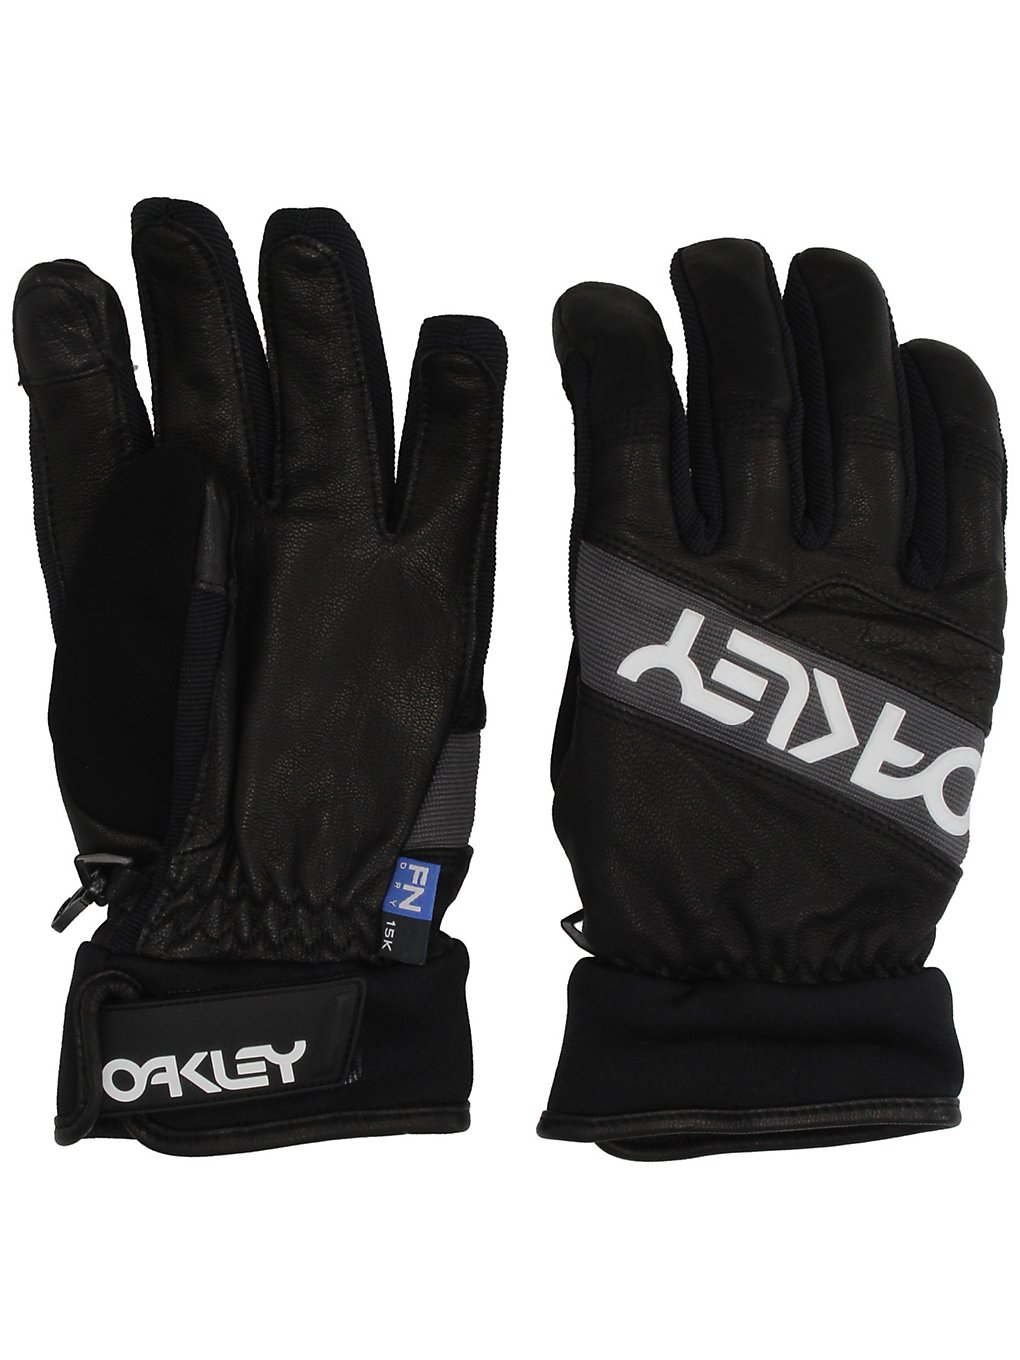 Oakley Factory Winter 2.0 Gloves blackout